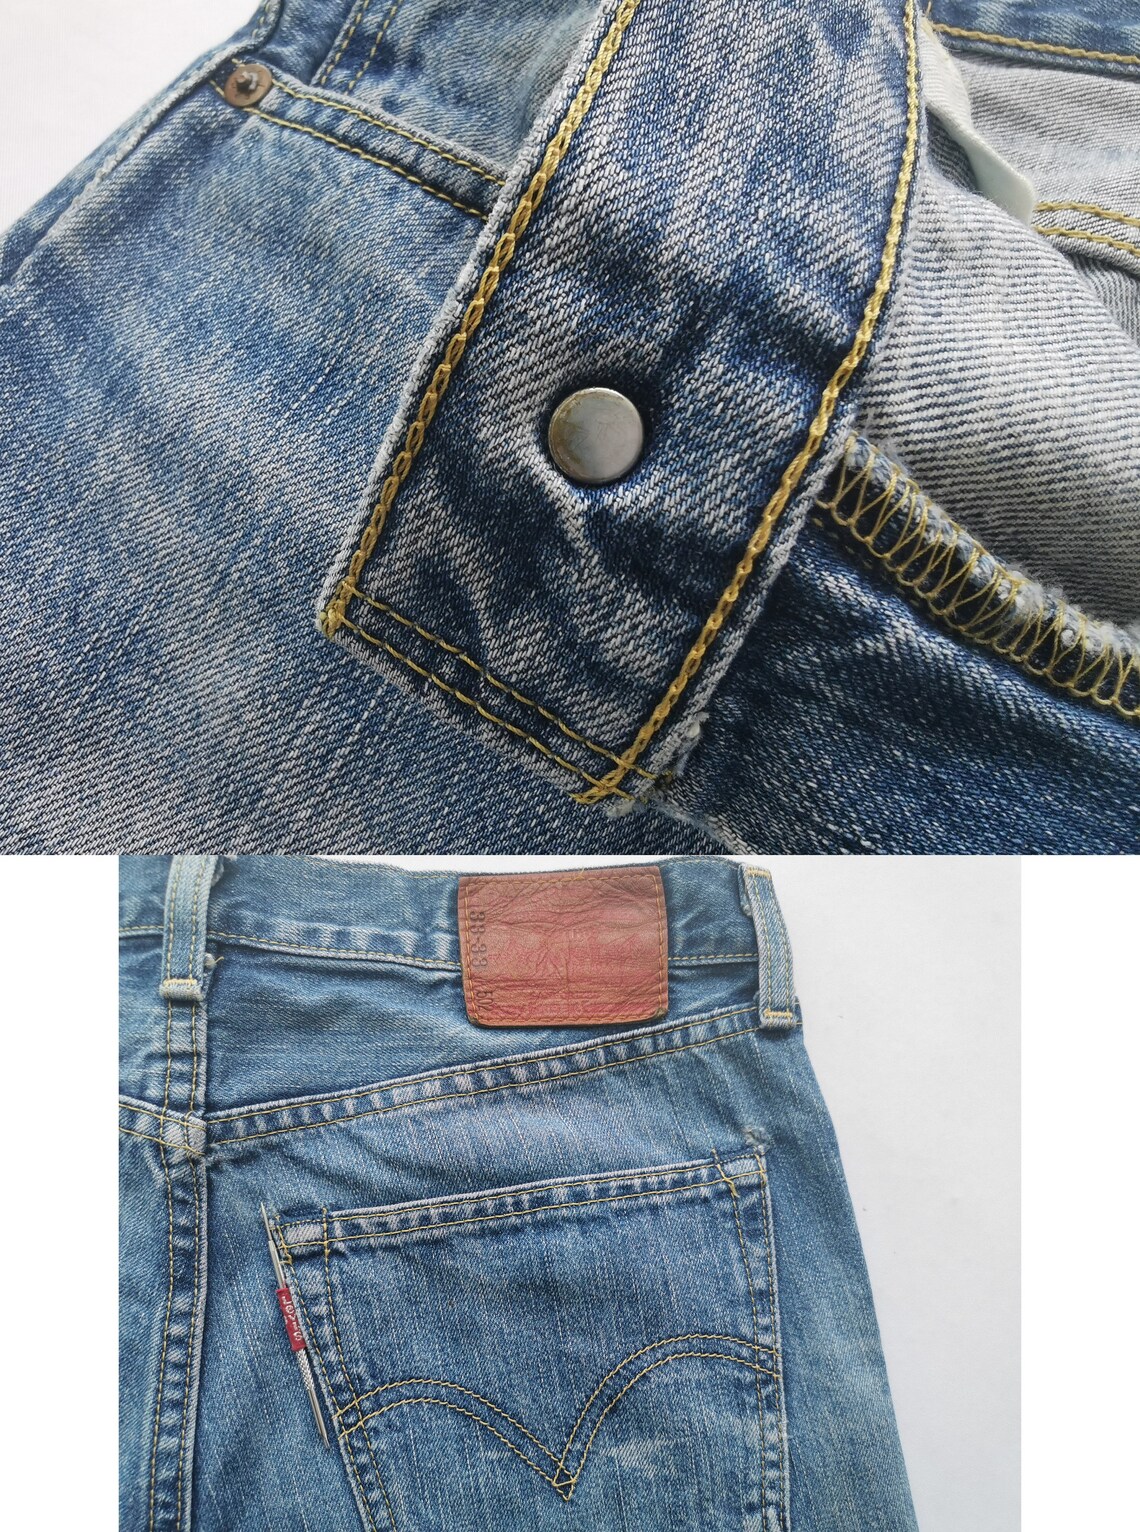 Levis 503 Jeans Distressed Vintage Size 33 Levis 503 Denim | Etsy